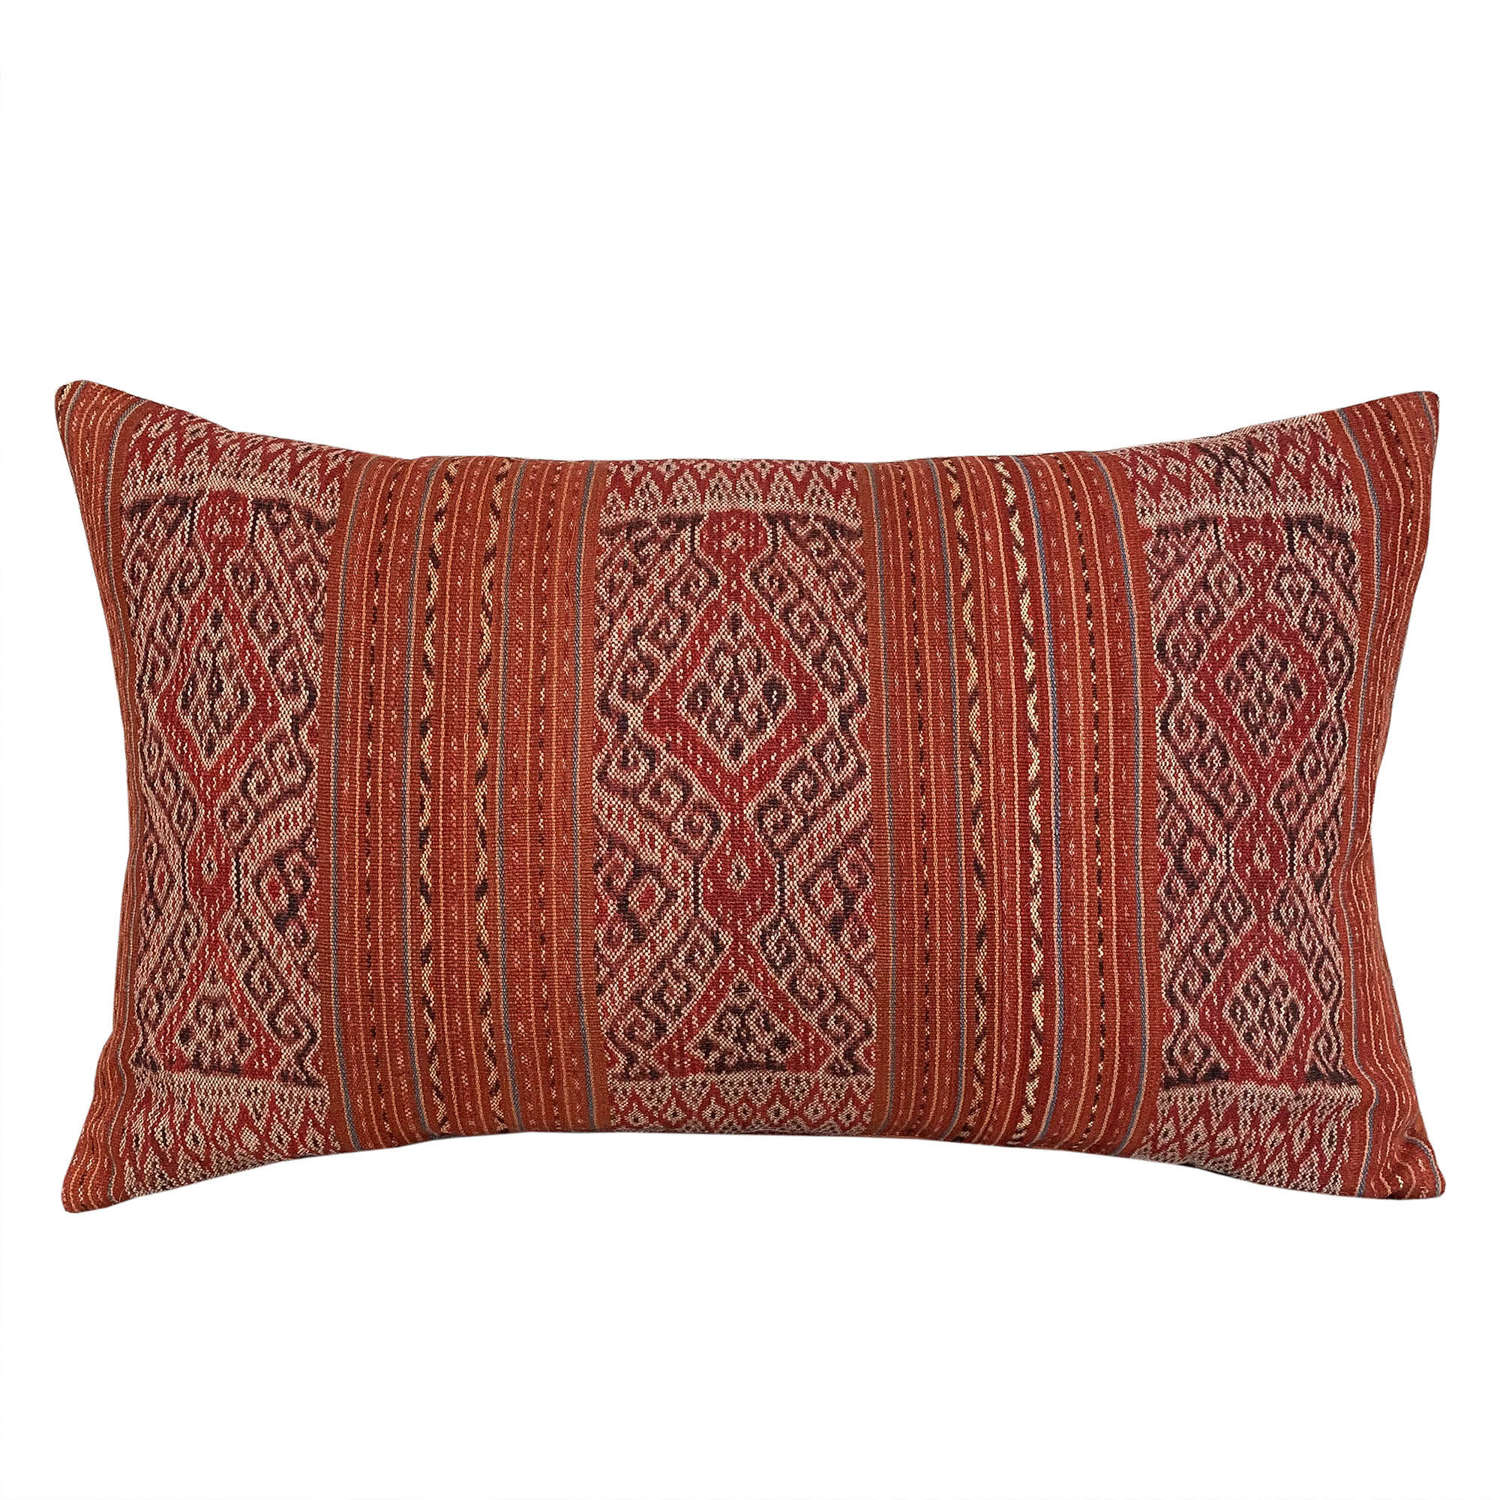 Timor ikat cushions